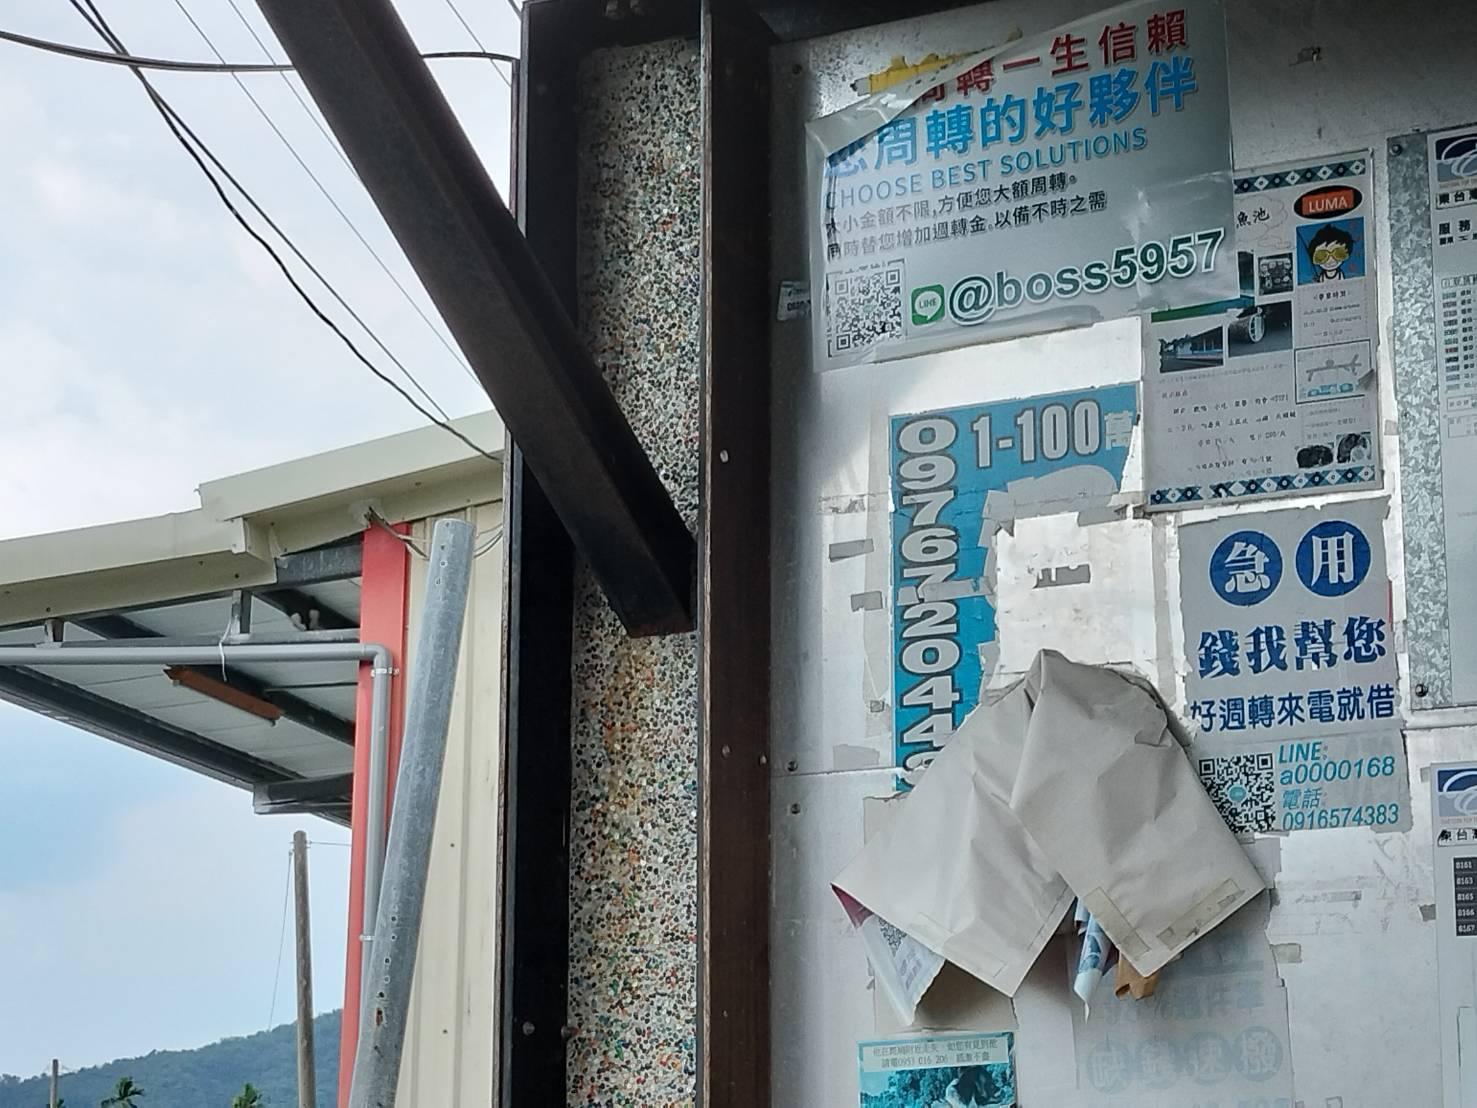 台东县近年积极设置公有候车亭给民众等公车时遮风避雨，不过，有些候车亭也成为广告看板，乱贴一通，有碍观瞻。县府忍无可忍将取缔开罚。记者尤聪光／摄影